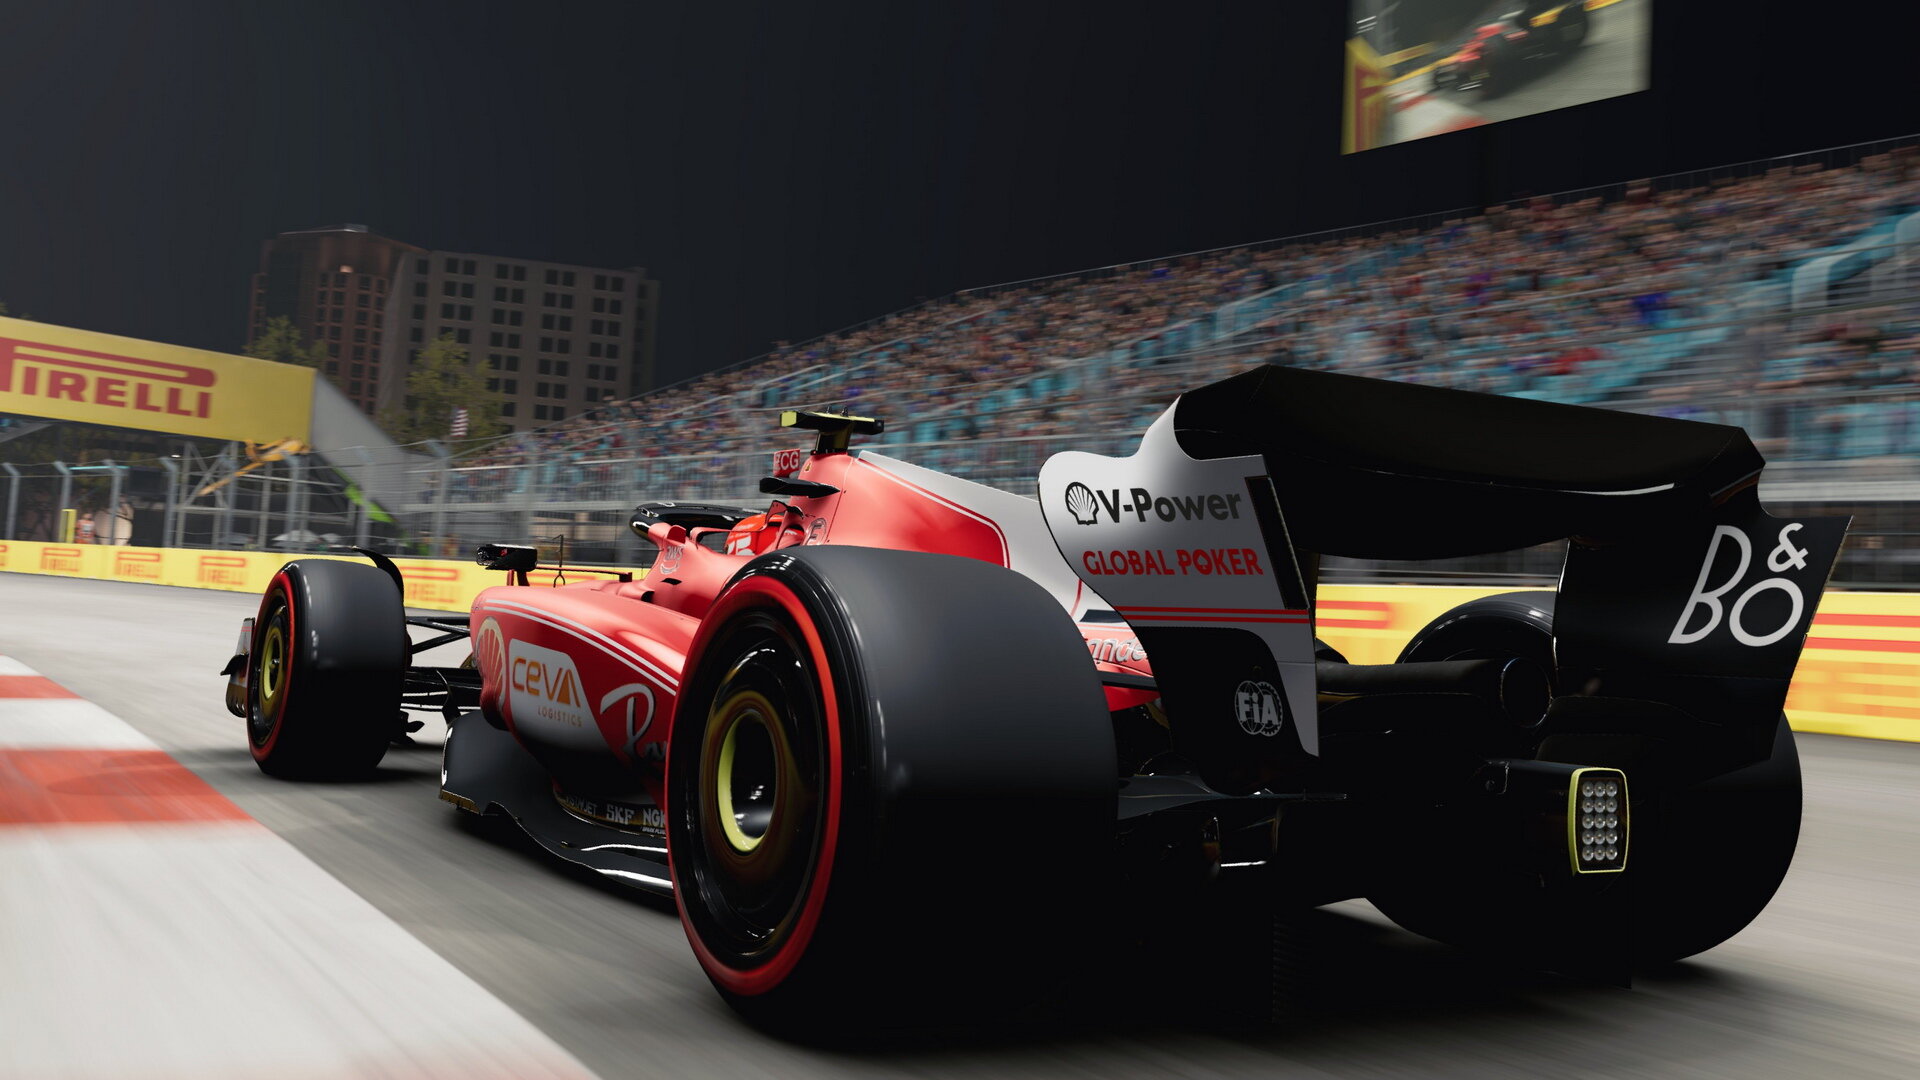 Nové zbarvení Ferrari pro závod v Las Vegas